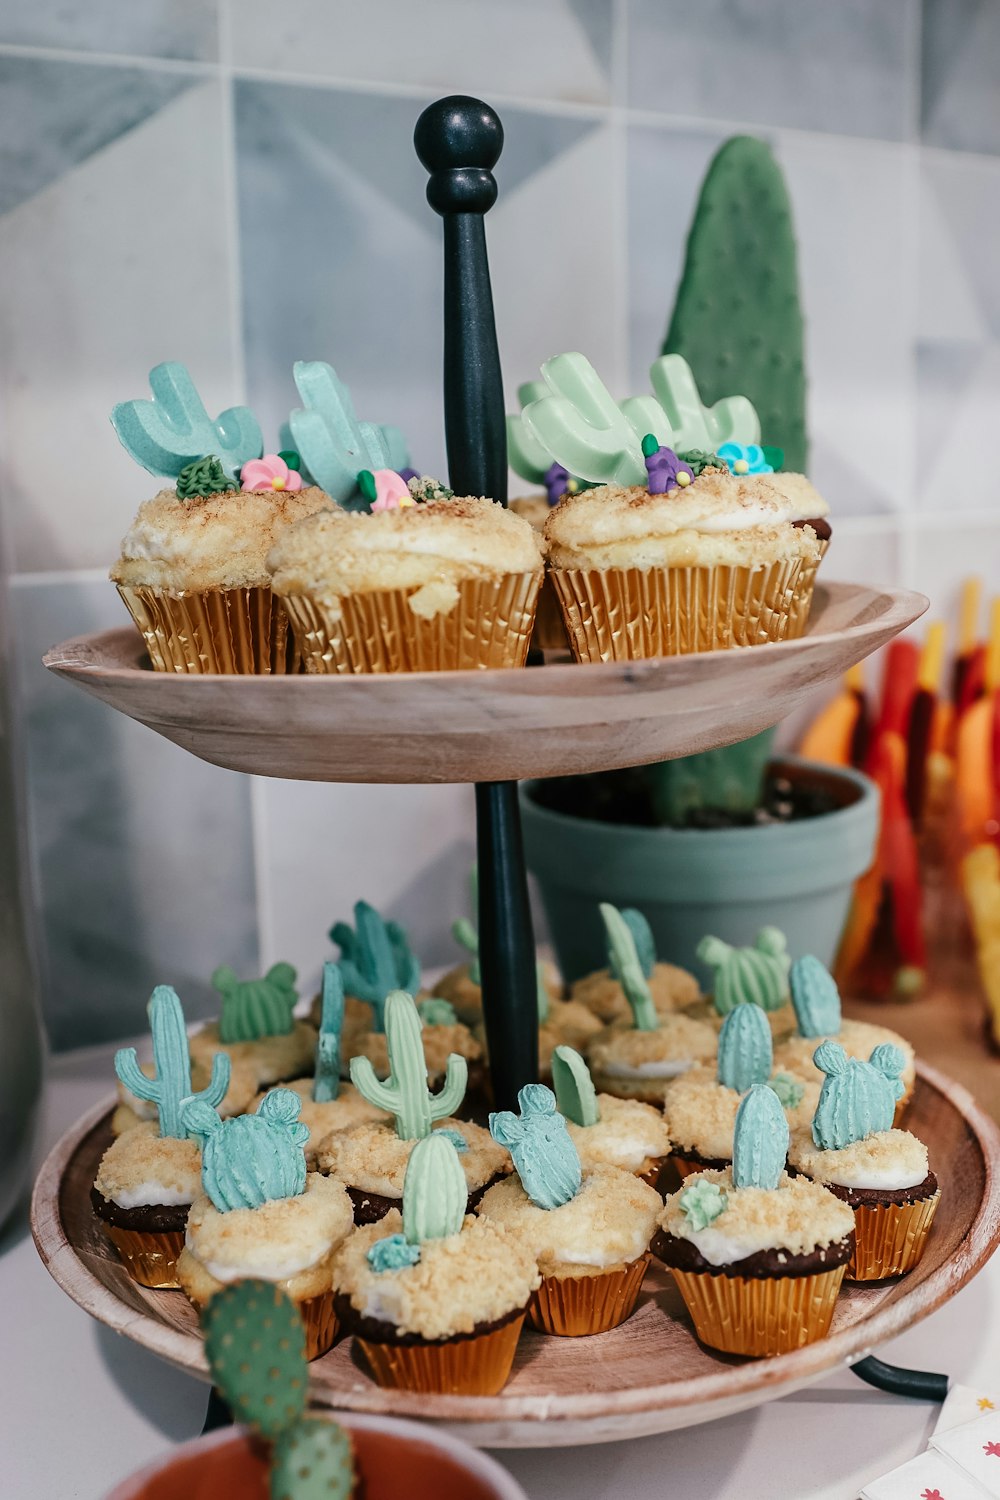 eine Gruppe Cupcakes mit grünem Zuckerguss und Streuseln oben drauf